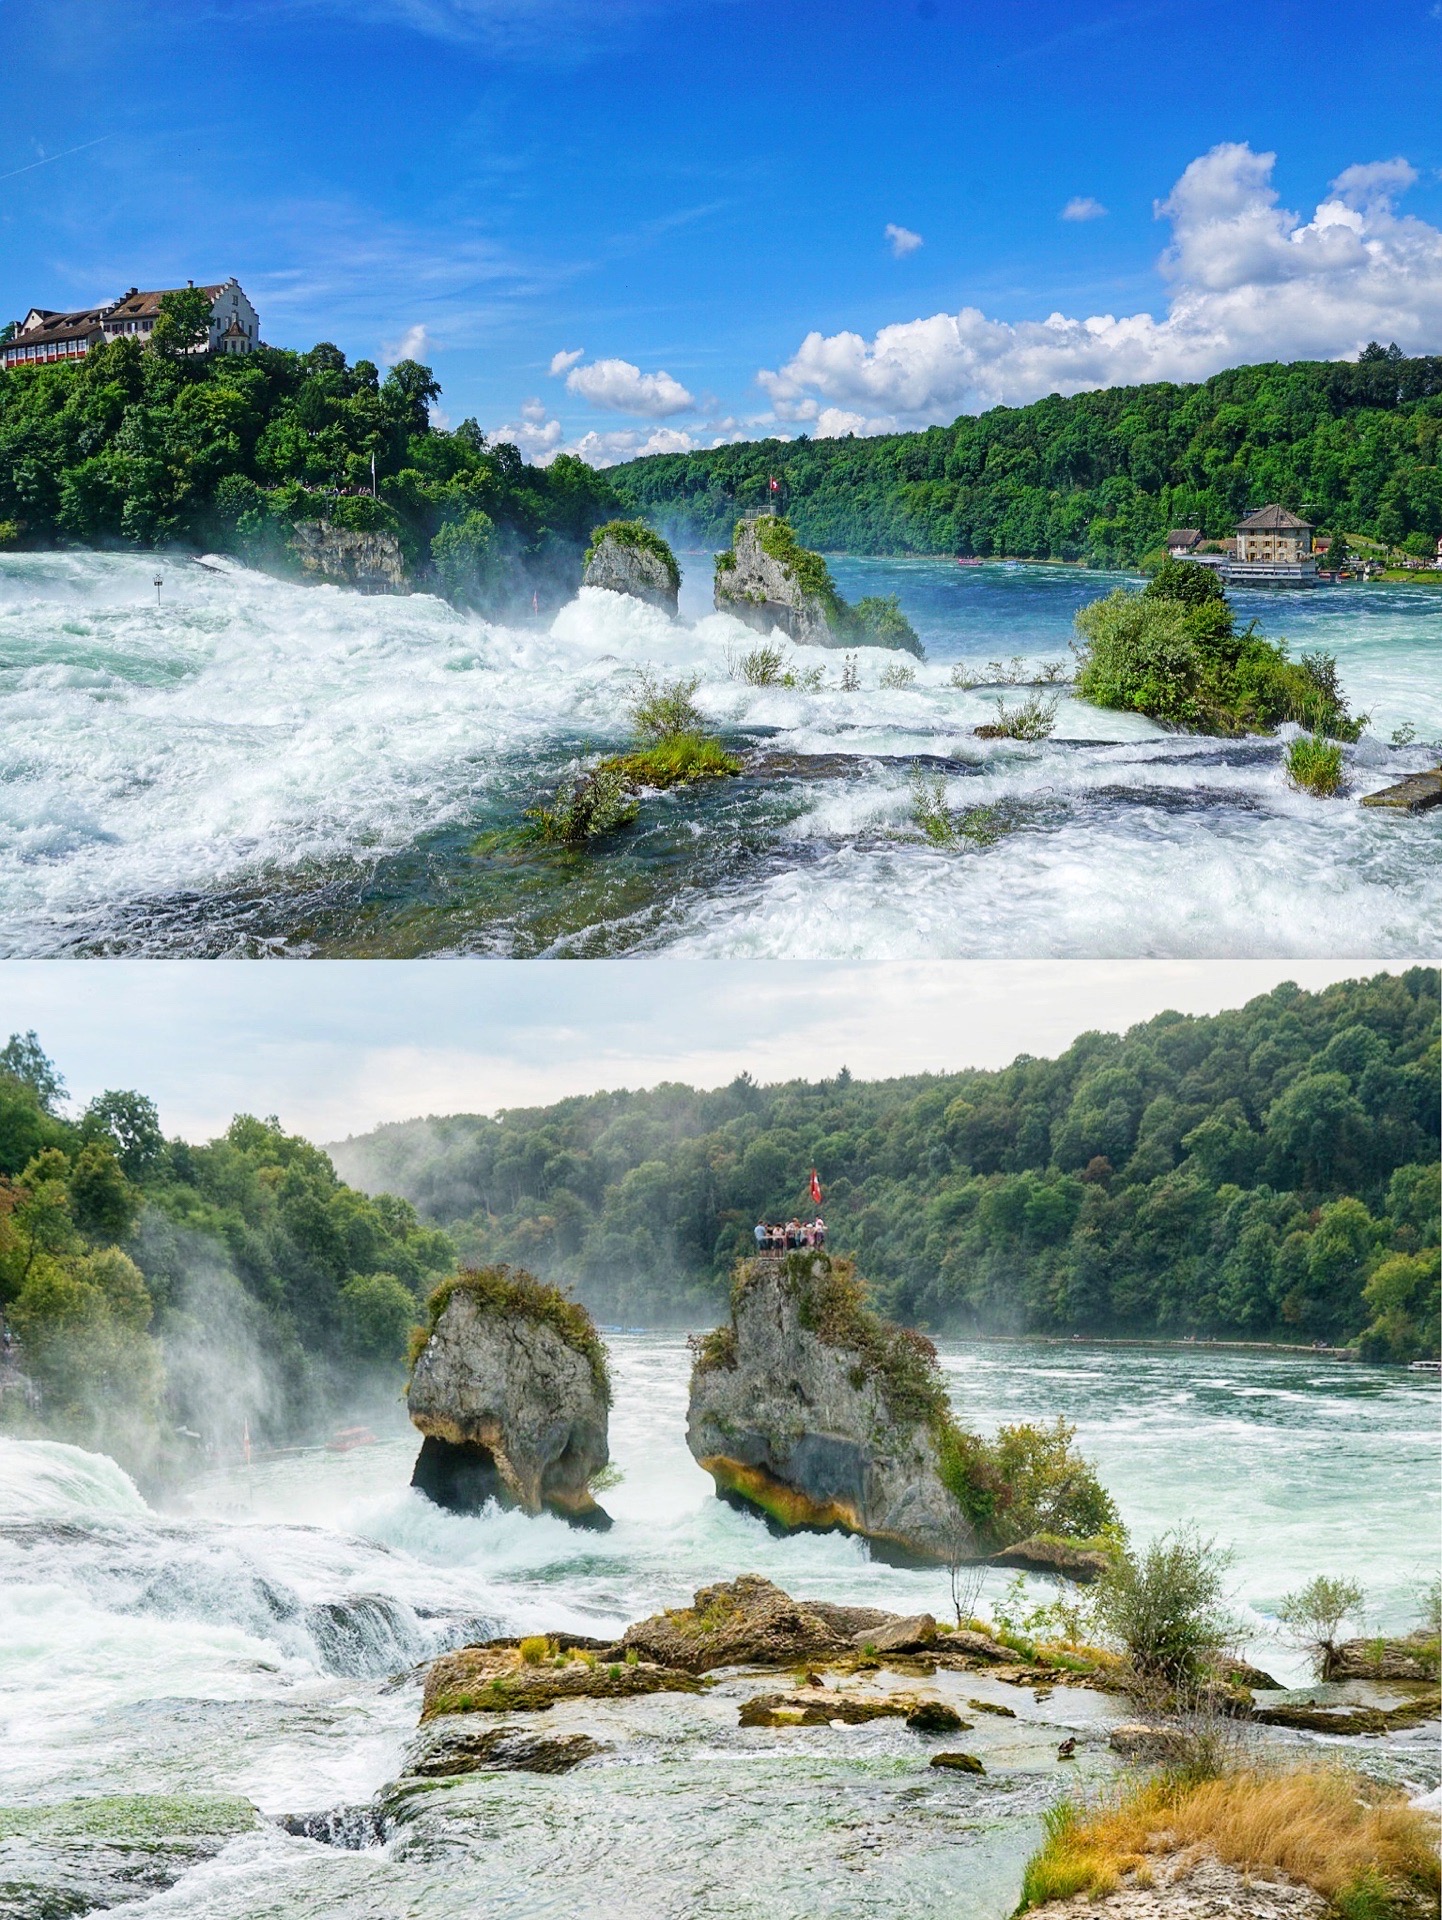 💙简介 莱茵河瀑布是欧洲最大的瀑布，位于德国和瑞士的边境，莱茵瀑布宽150米，每秒流量700立方米游